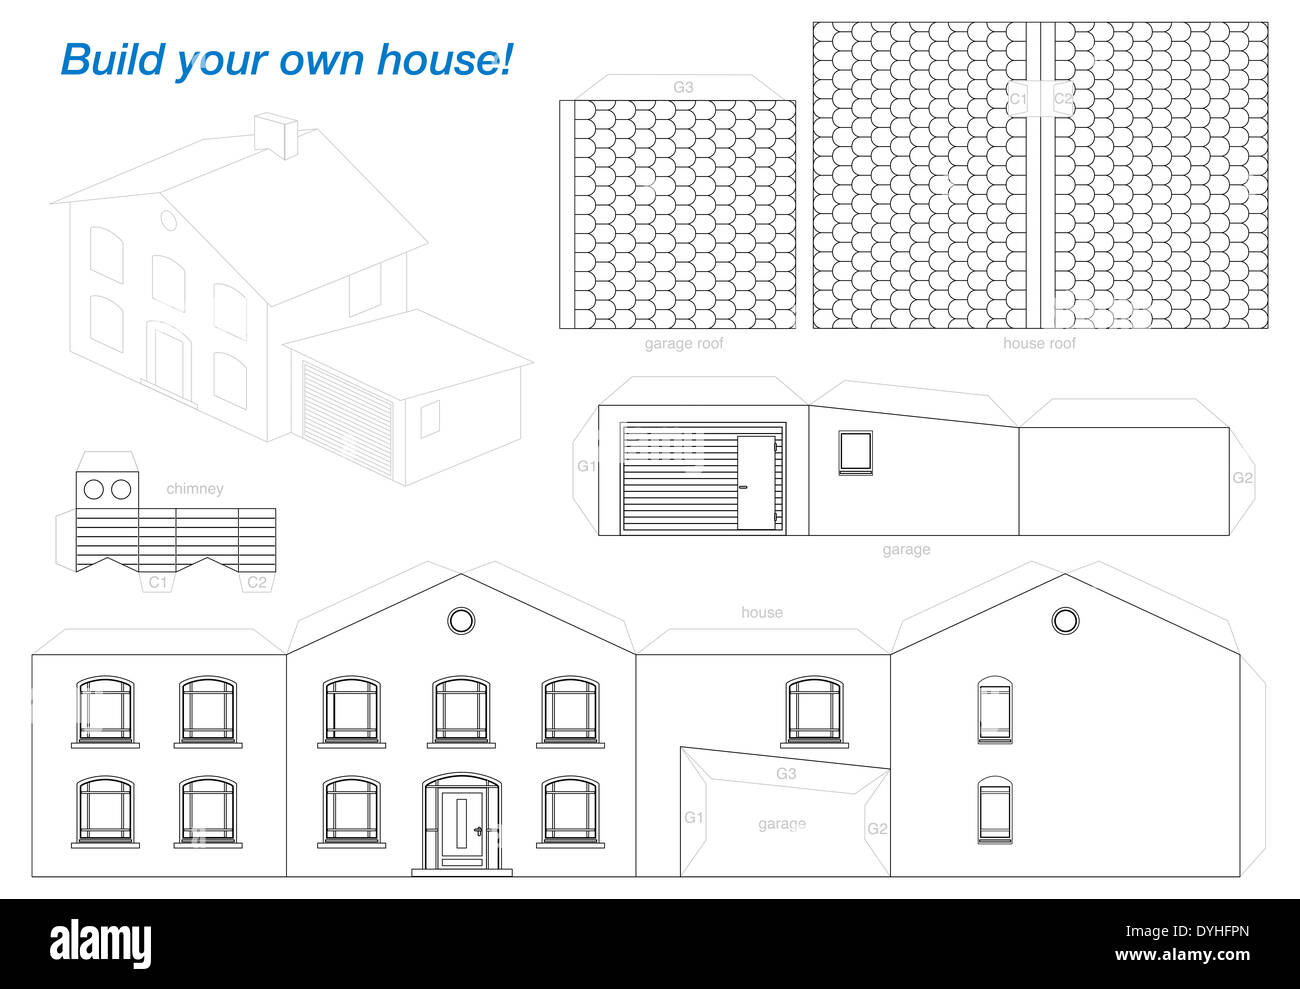 Das Papiermodell eines Hauses mit Garage - einfach zu machen - auf schwerem Papier ausdrucken. Stockfoto